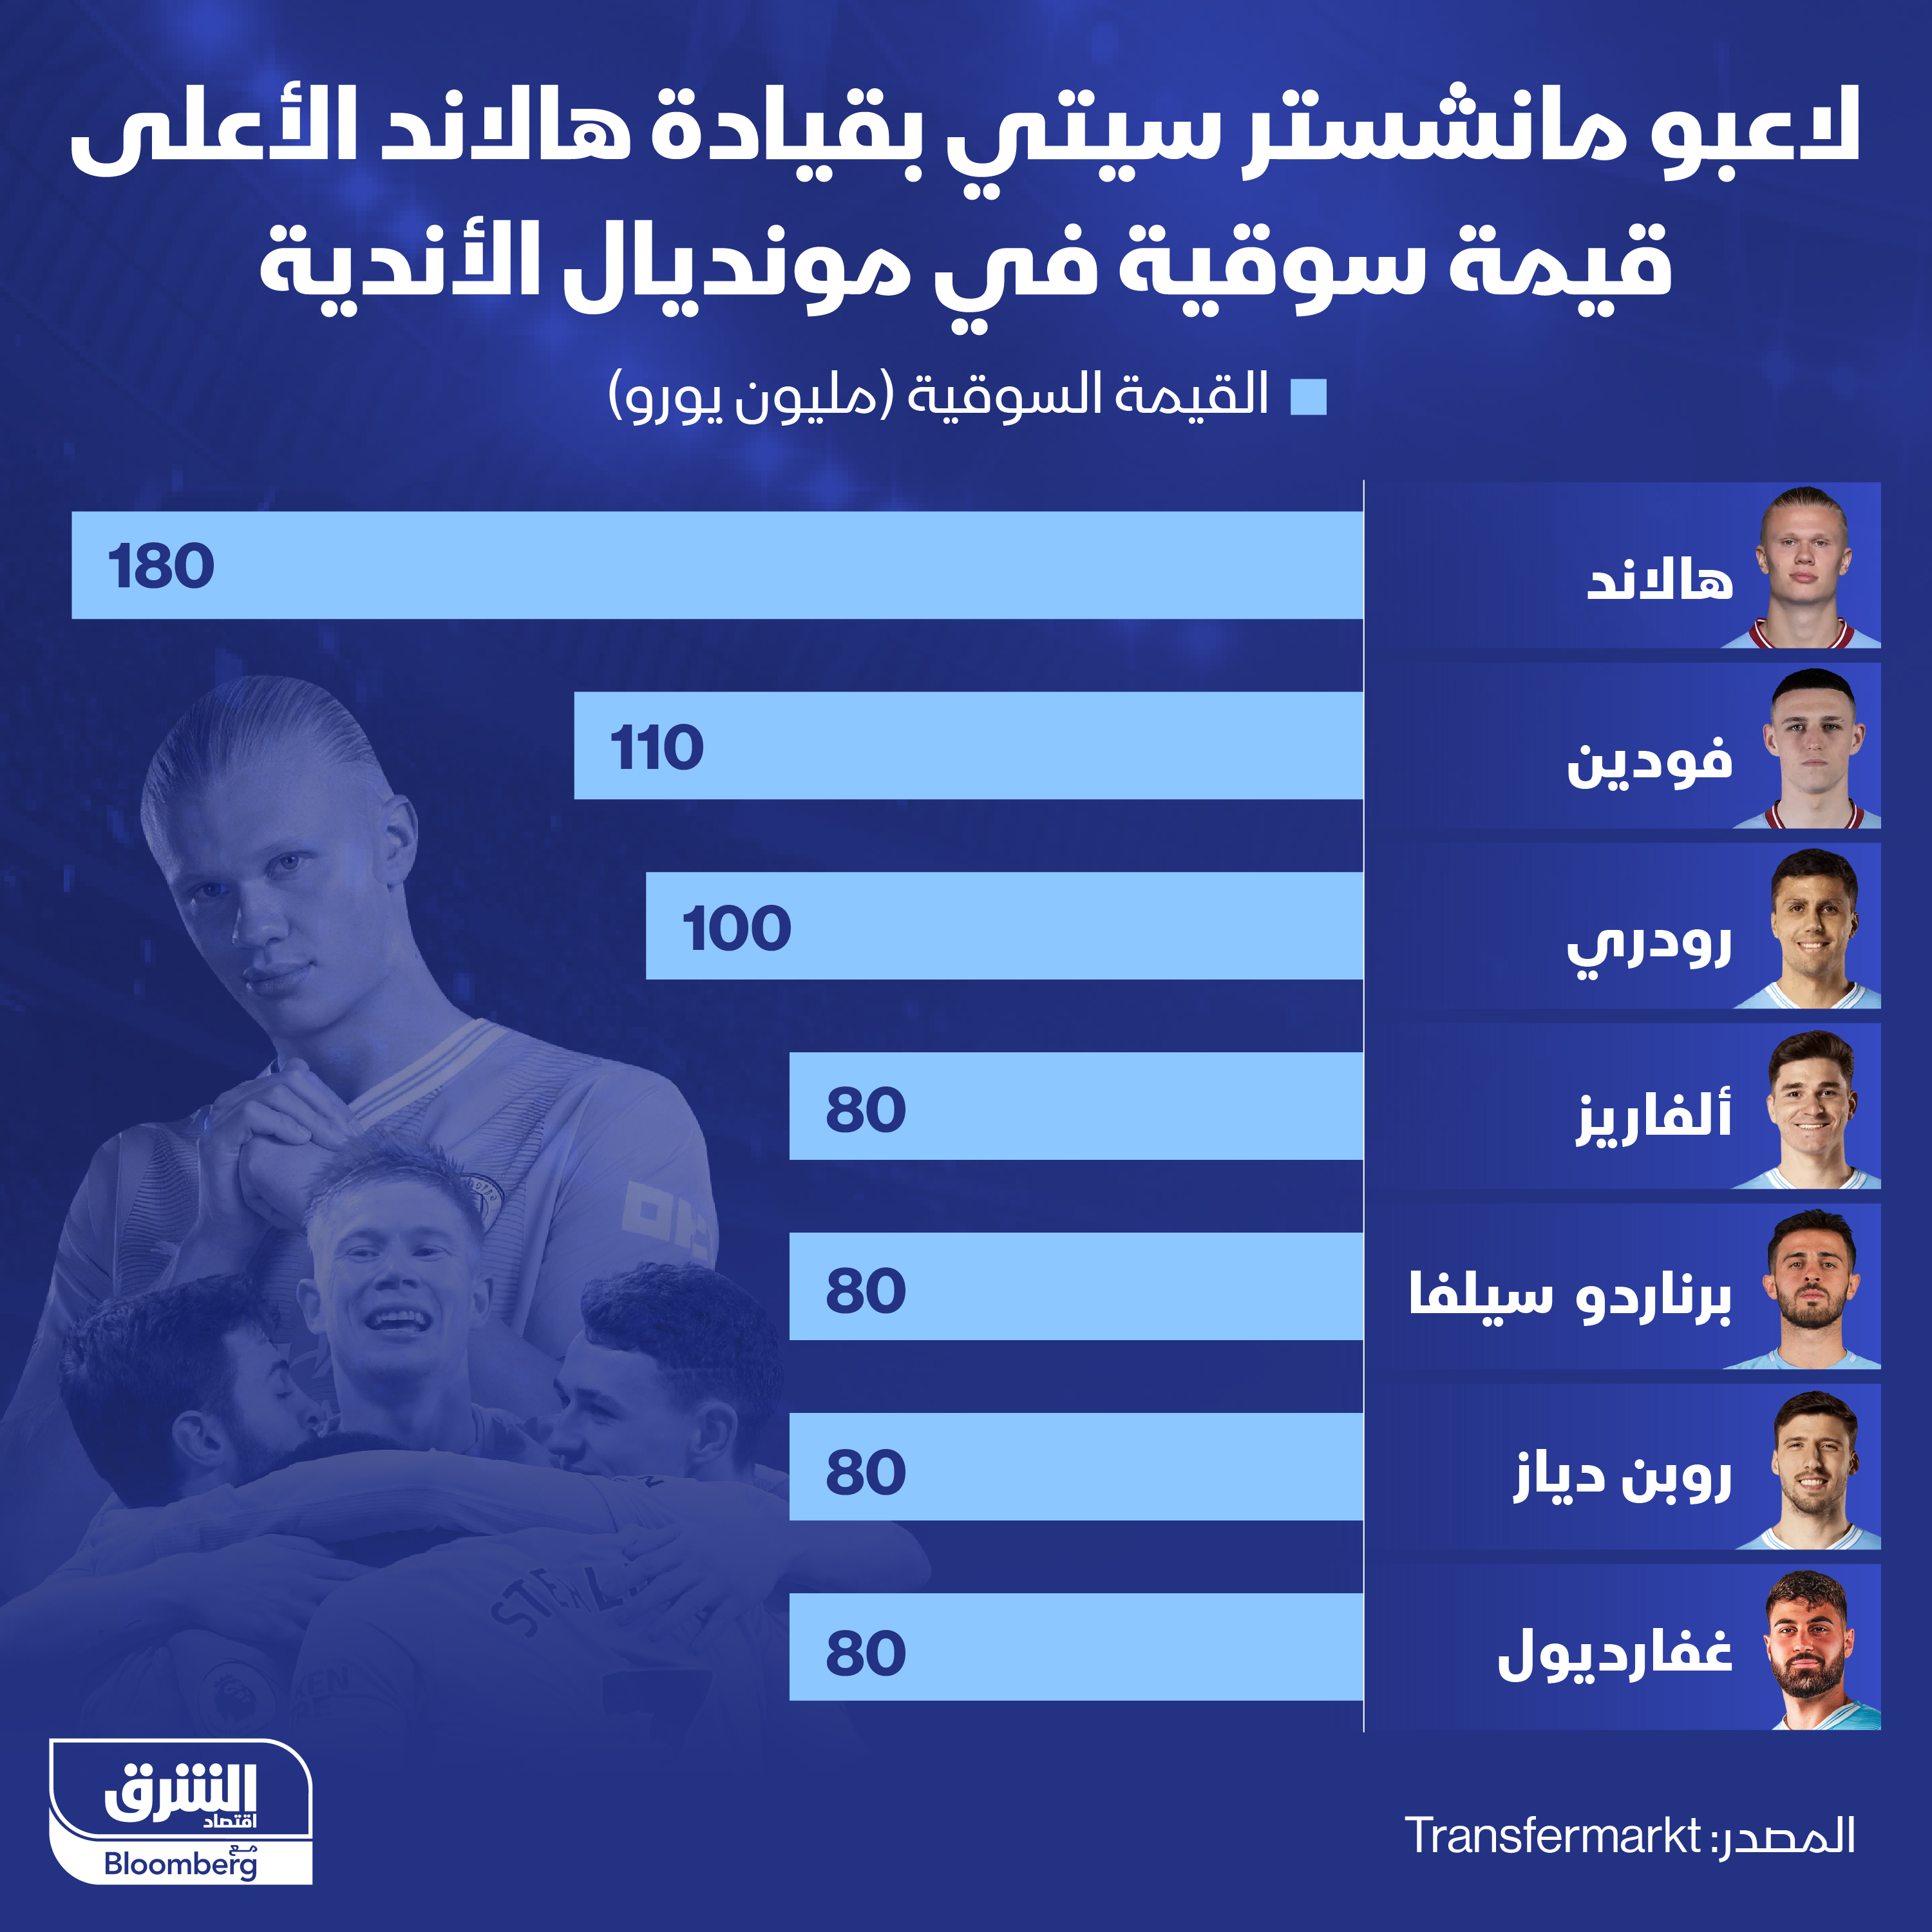 يُعتبر لاعبو نادي "مانشستر سيتي" الأعلى قيمة سوقية بين اللاعبين المشاركين في بطولة كأس العالم للأندية في السعودية